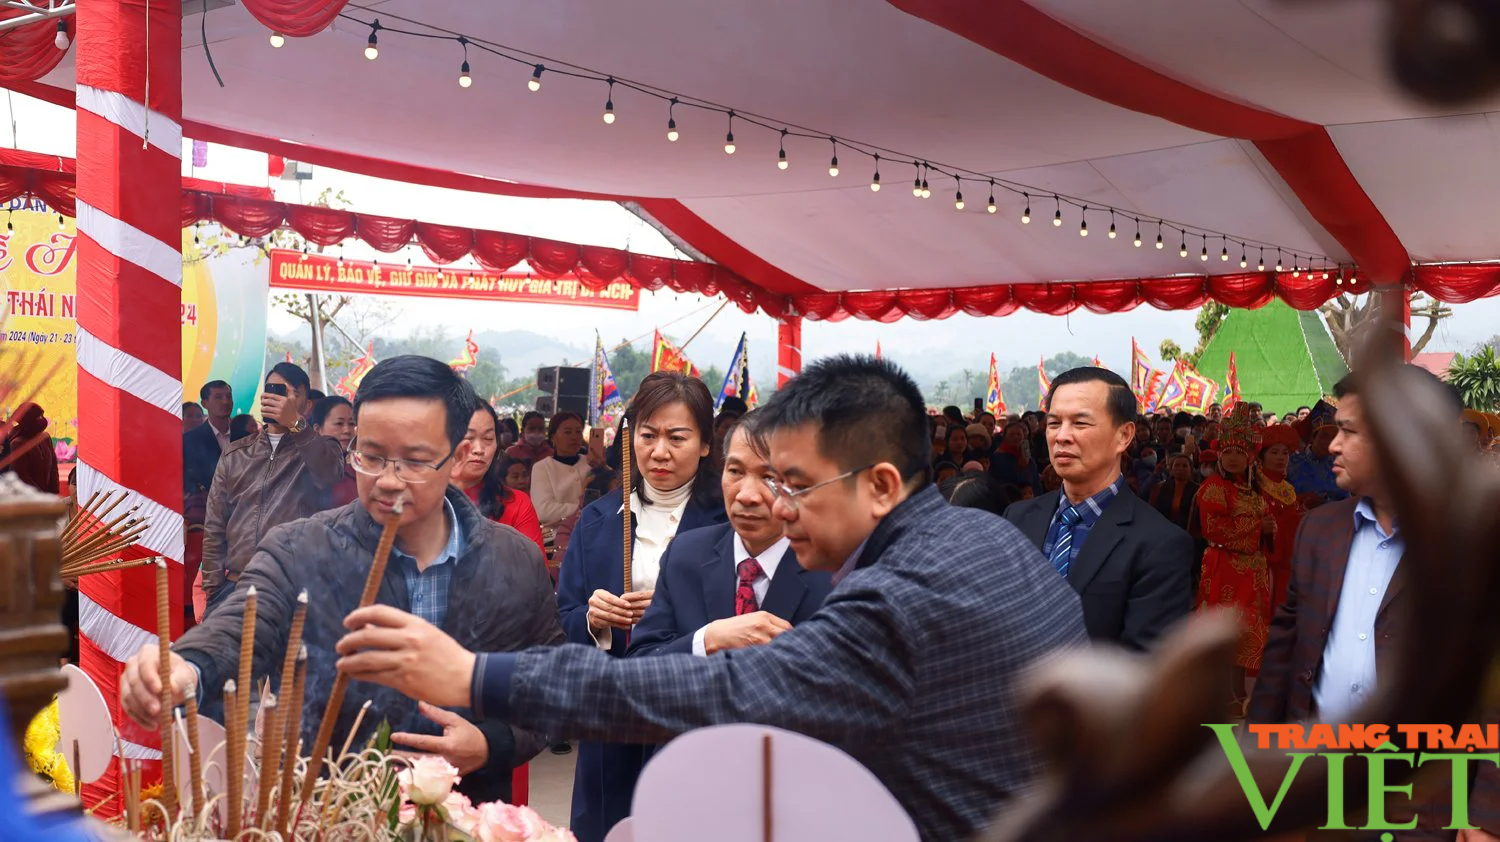 Lễ hội có xôi gấc đỏ thắm, gà luộc cánh tiên thu hút hàng nghìn du khách tới dâng hương ở Lào Cai- Ảnh 4.